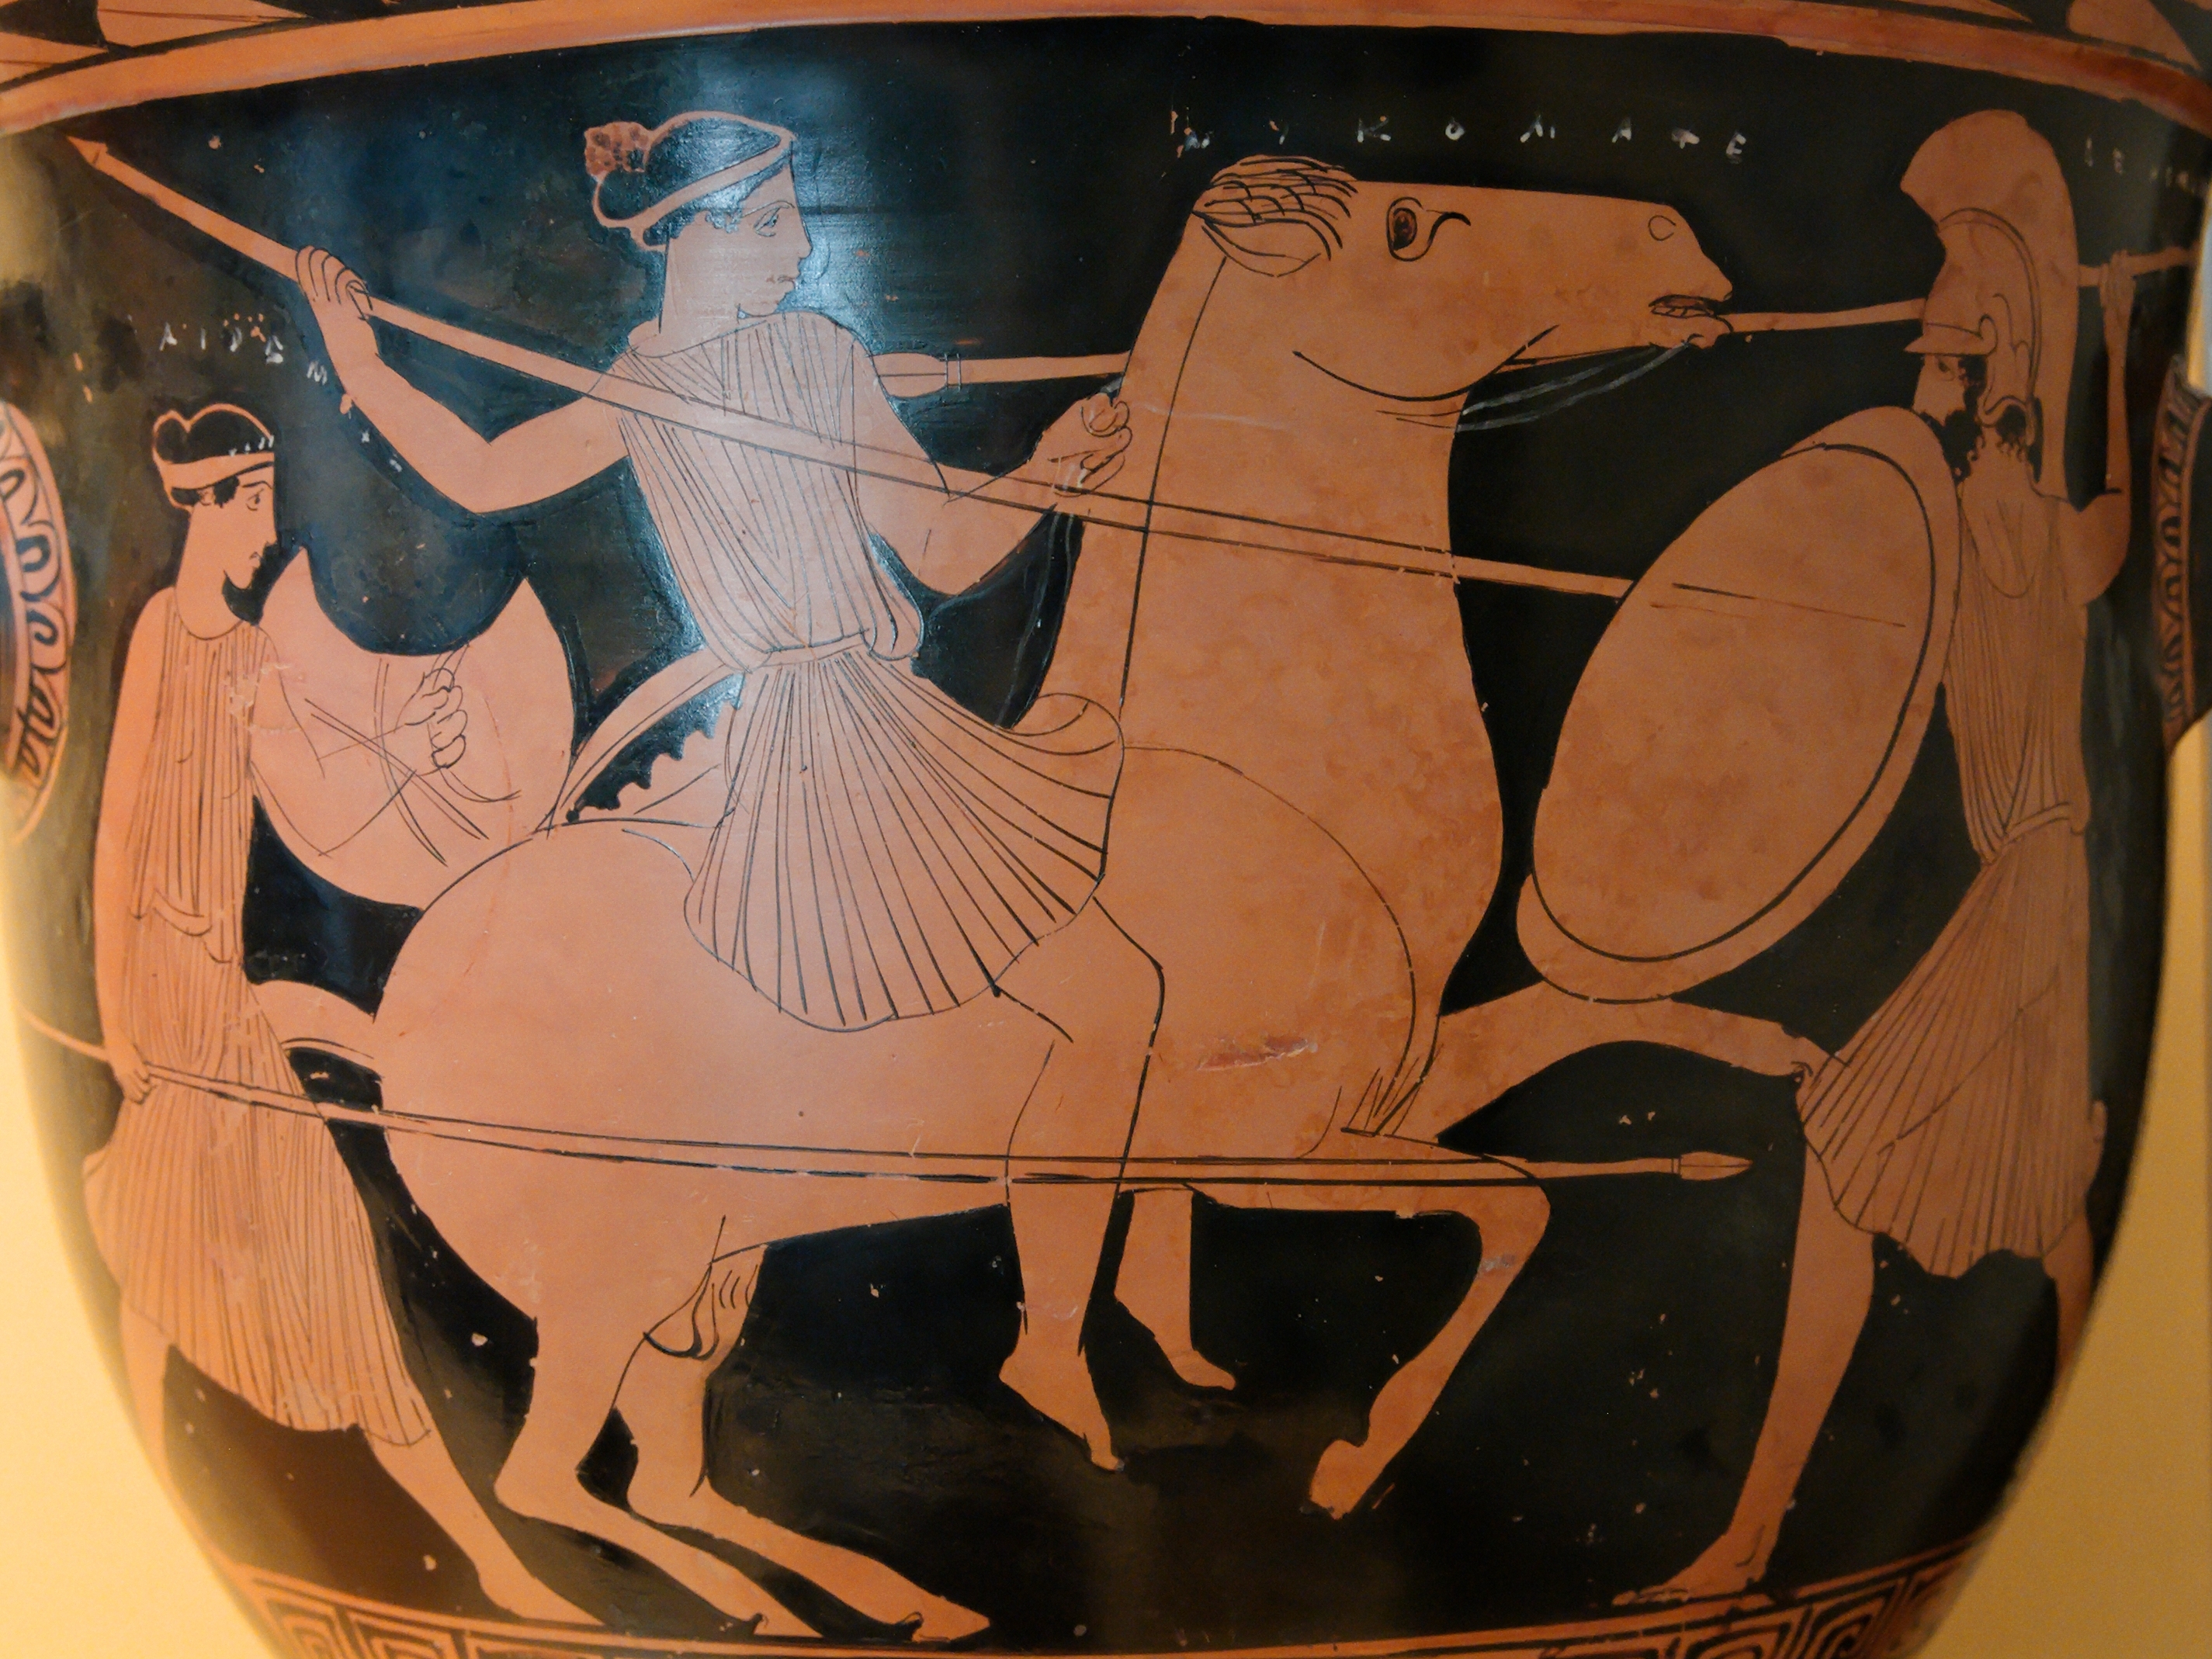 В греческом изобразительном искусстве при создании рисунка на вазе использовали цвета